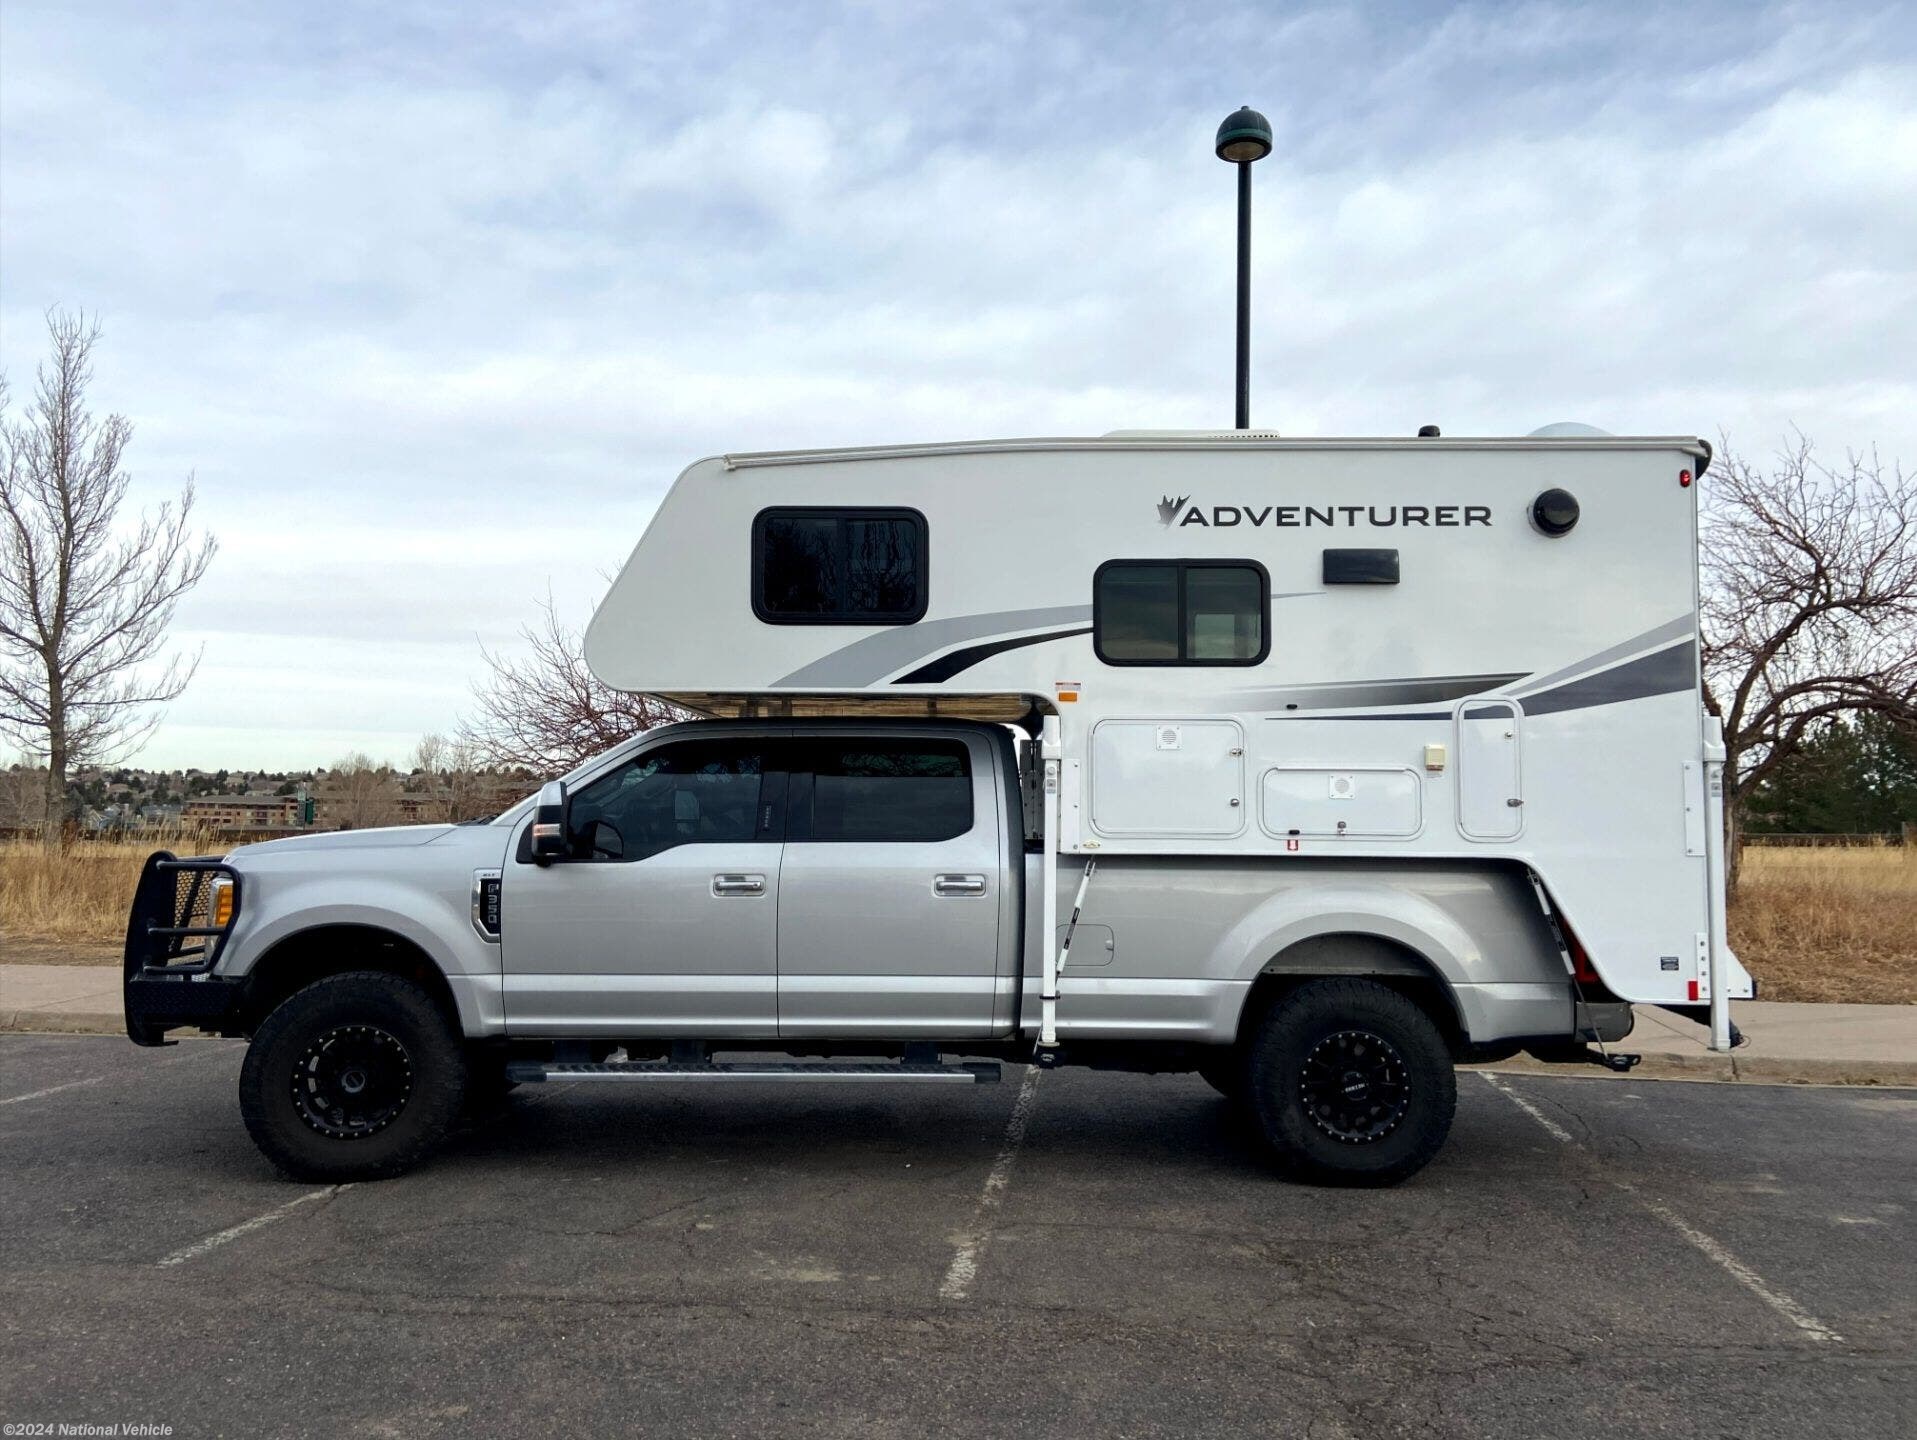 2021 Adventurer Truck Camper 89RB RV for Sale in Castle Rock, CO 80104 ...